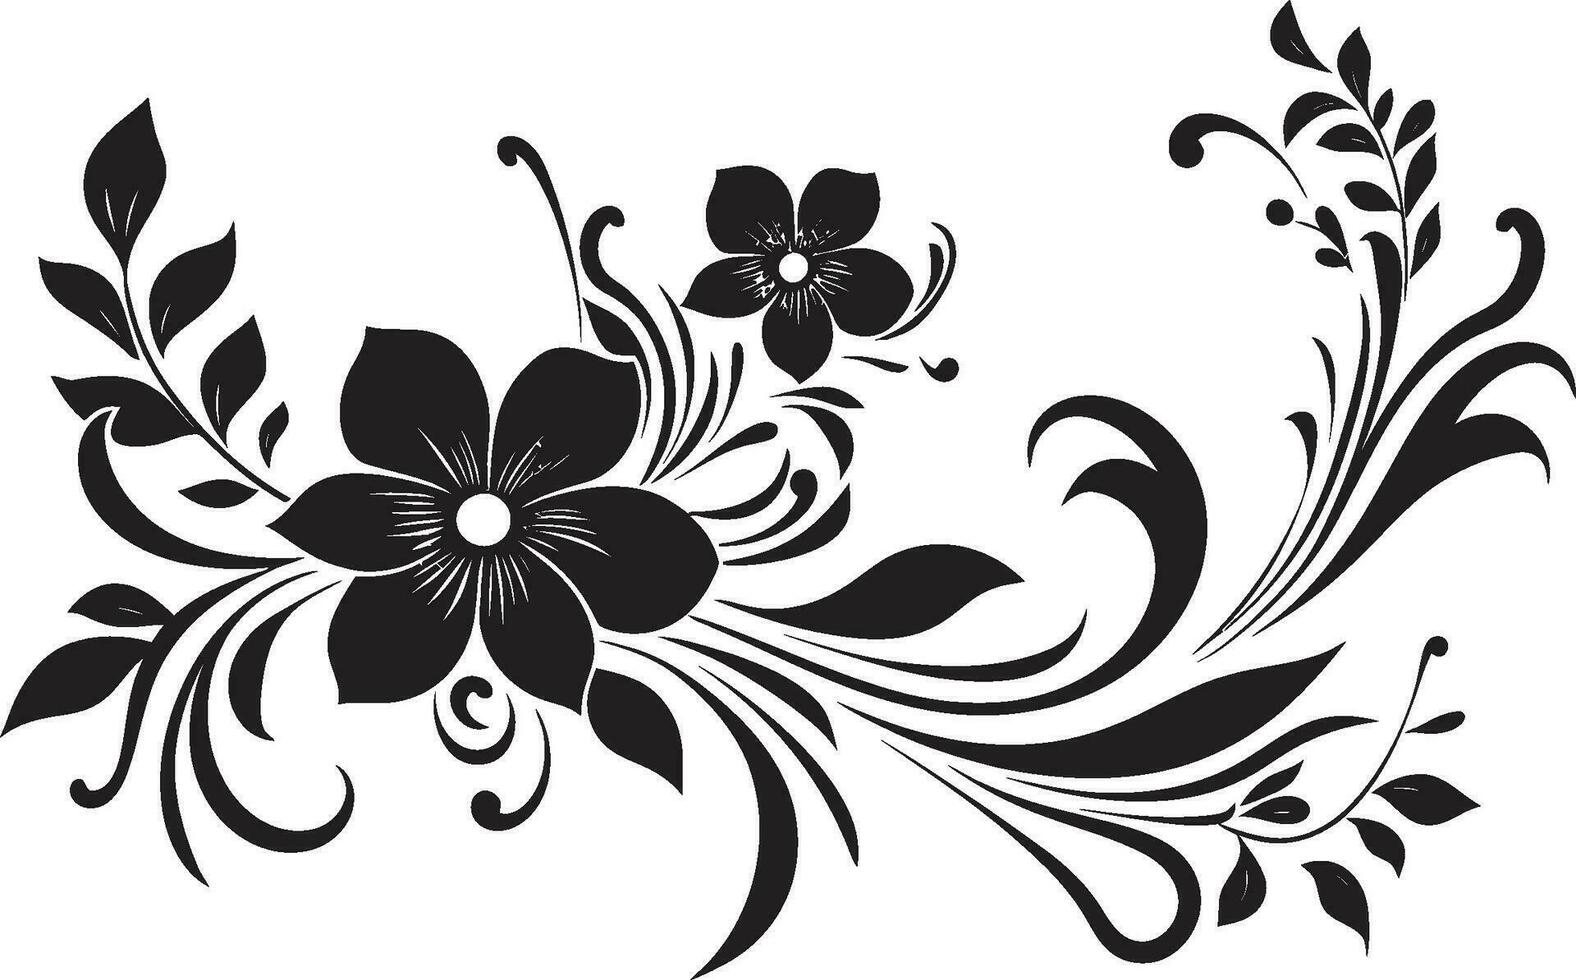 Floral Noir Enigma Intricate Black Logo Vectors Petal Reverie Noir Artistic Floral Emblem Sketches